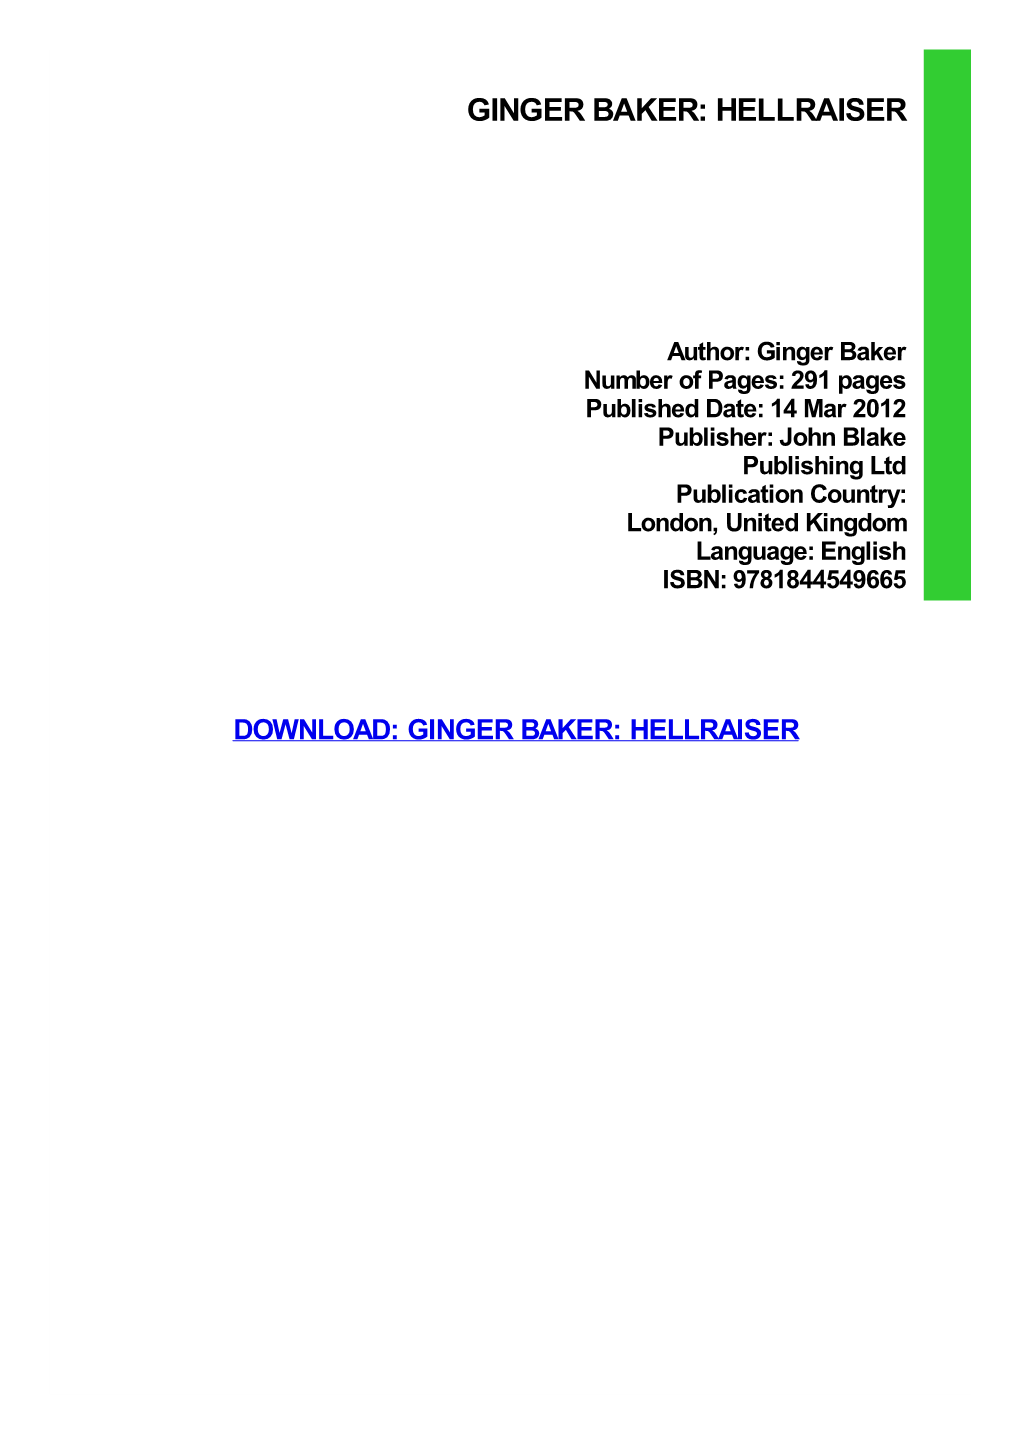 Ginger Baker: Hellraiser Download Free